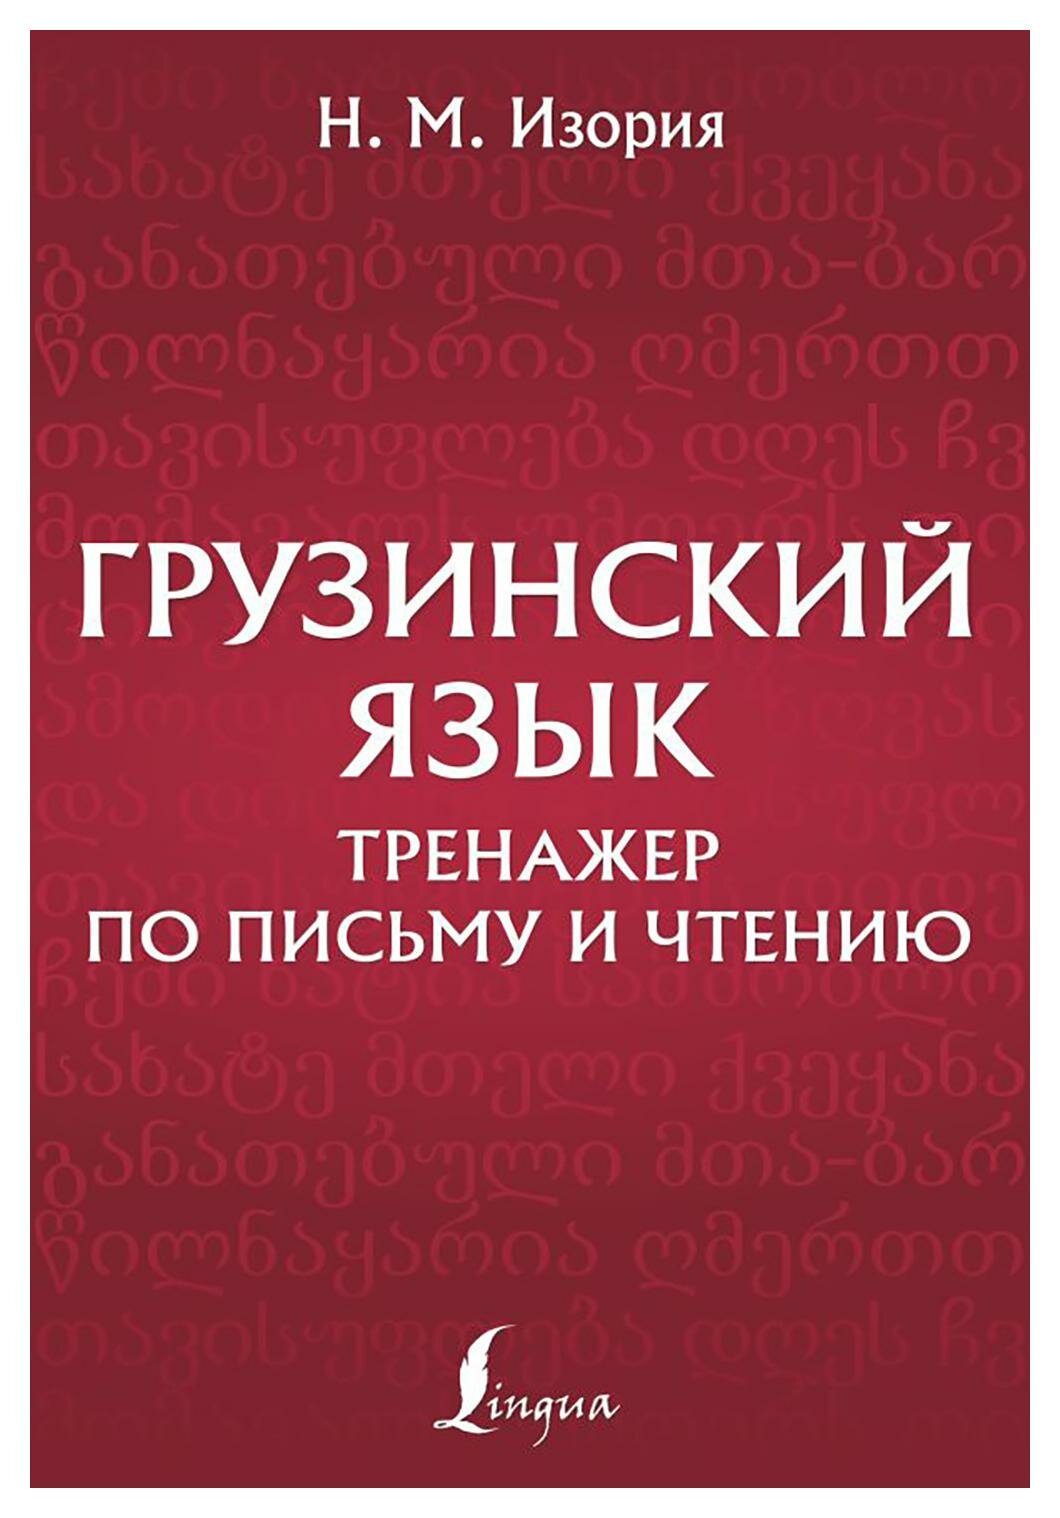 Грузинский язык: тренажер по письму и чтению. Изория Н. М. АСТ